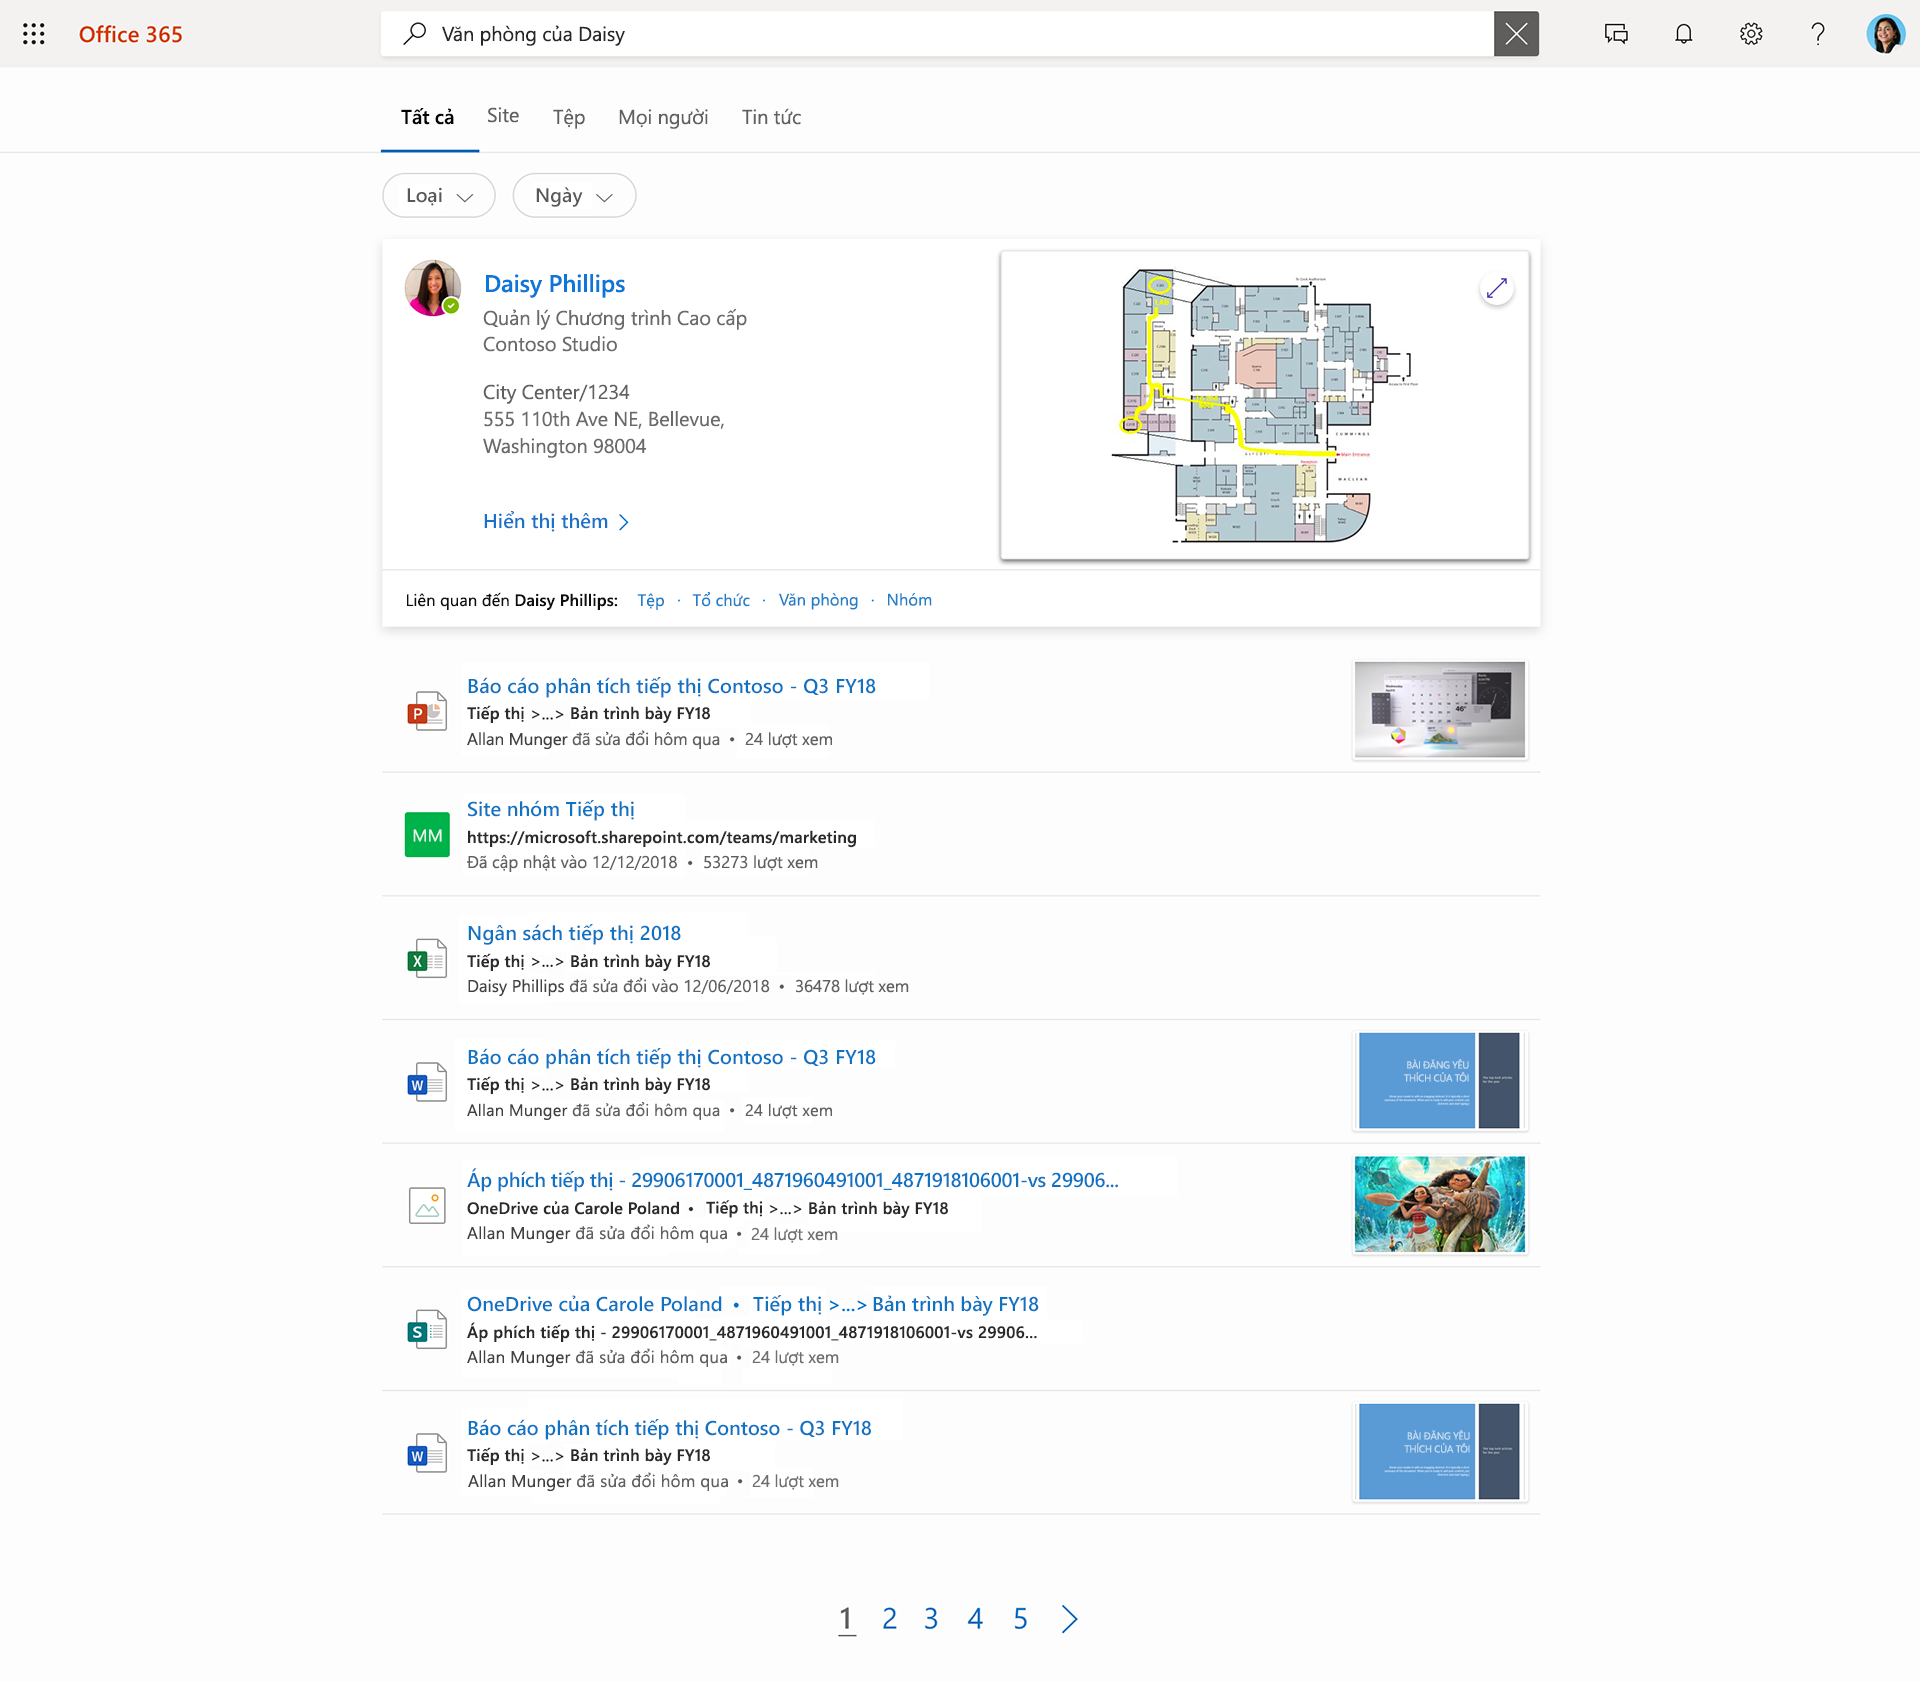 Hình ảnh về Tìm kiếm của Microsoft. Một người dùng đã nhập cụm từ Văn phòng Daisy và các liên hệ, tệp cũng như site được hiển thị trong danh sách của cô ấy.